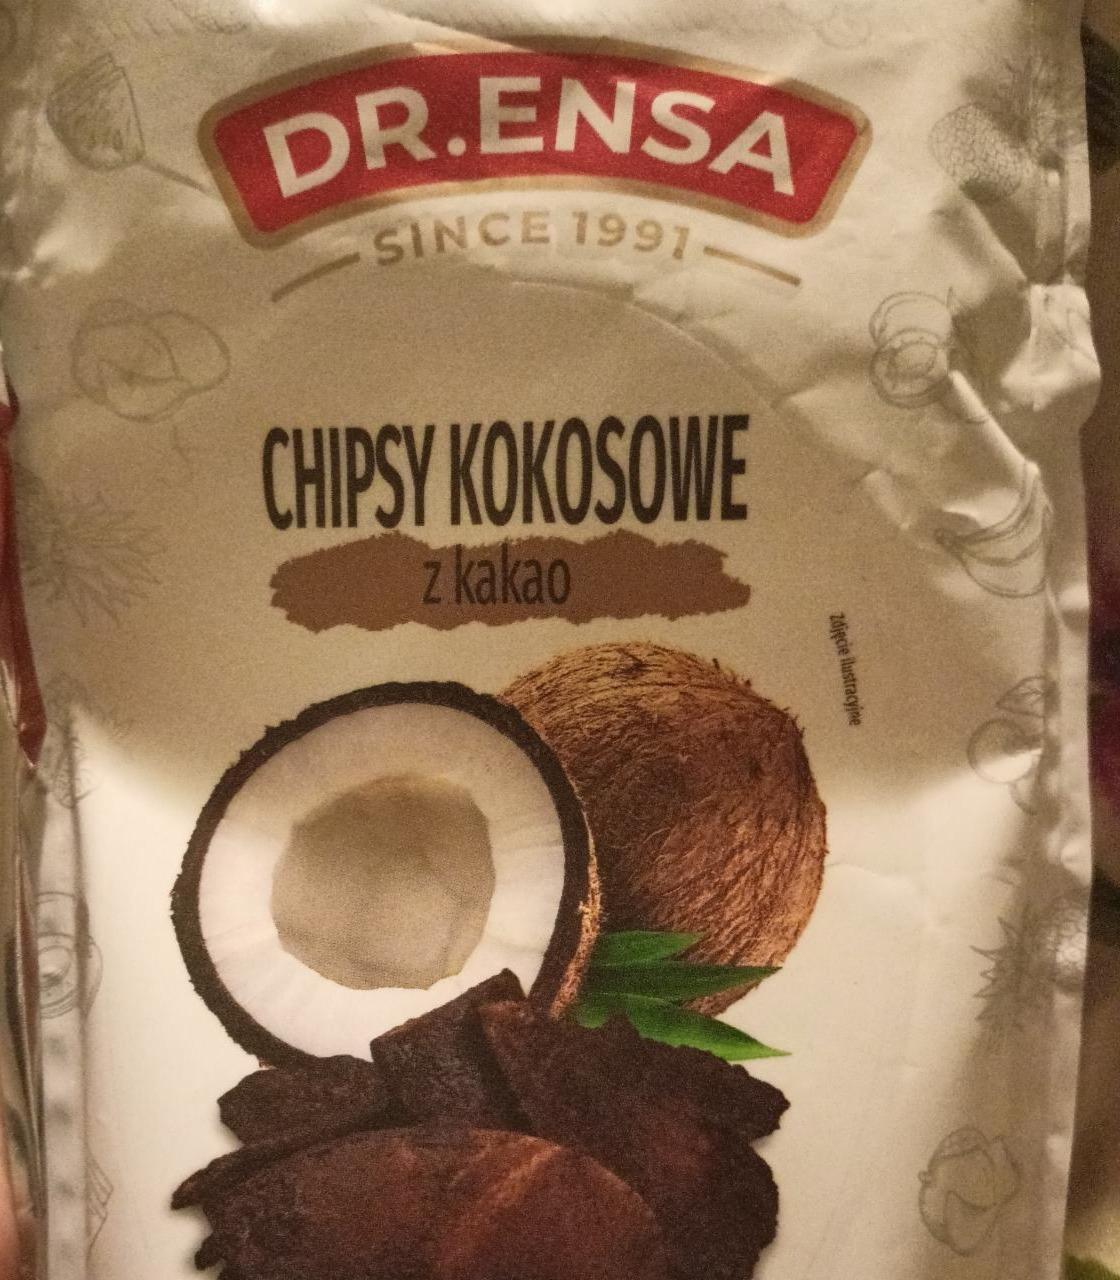 Zdjęcia - Chipsy kokosowe z kakao Dr.Ensa